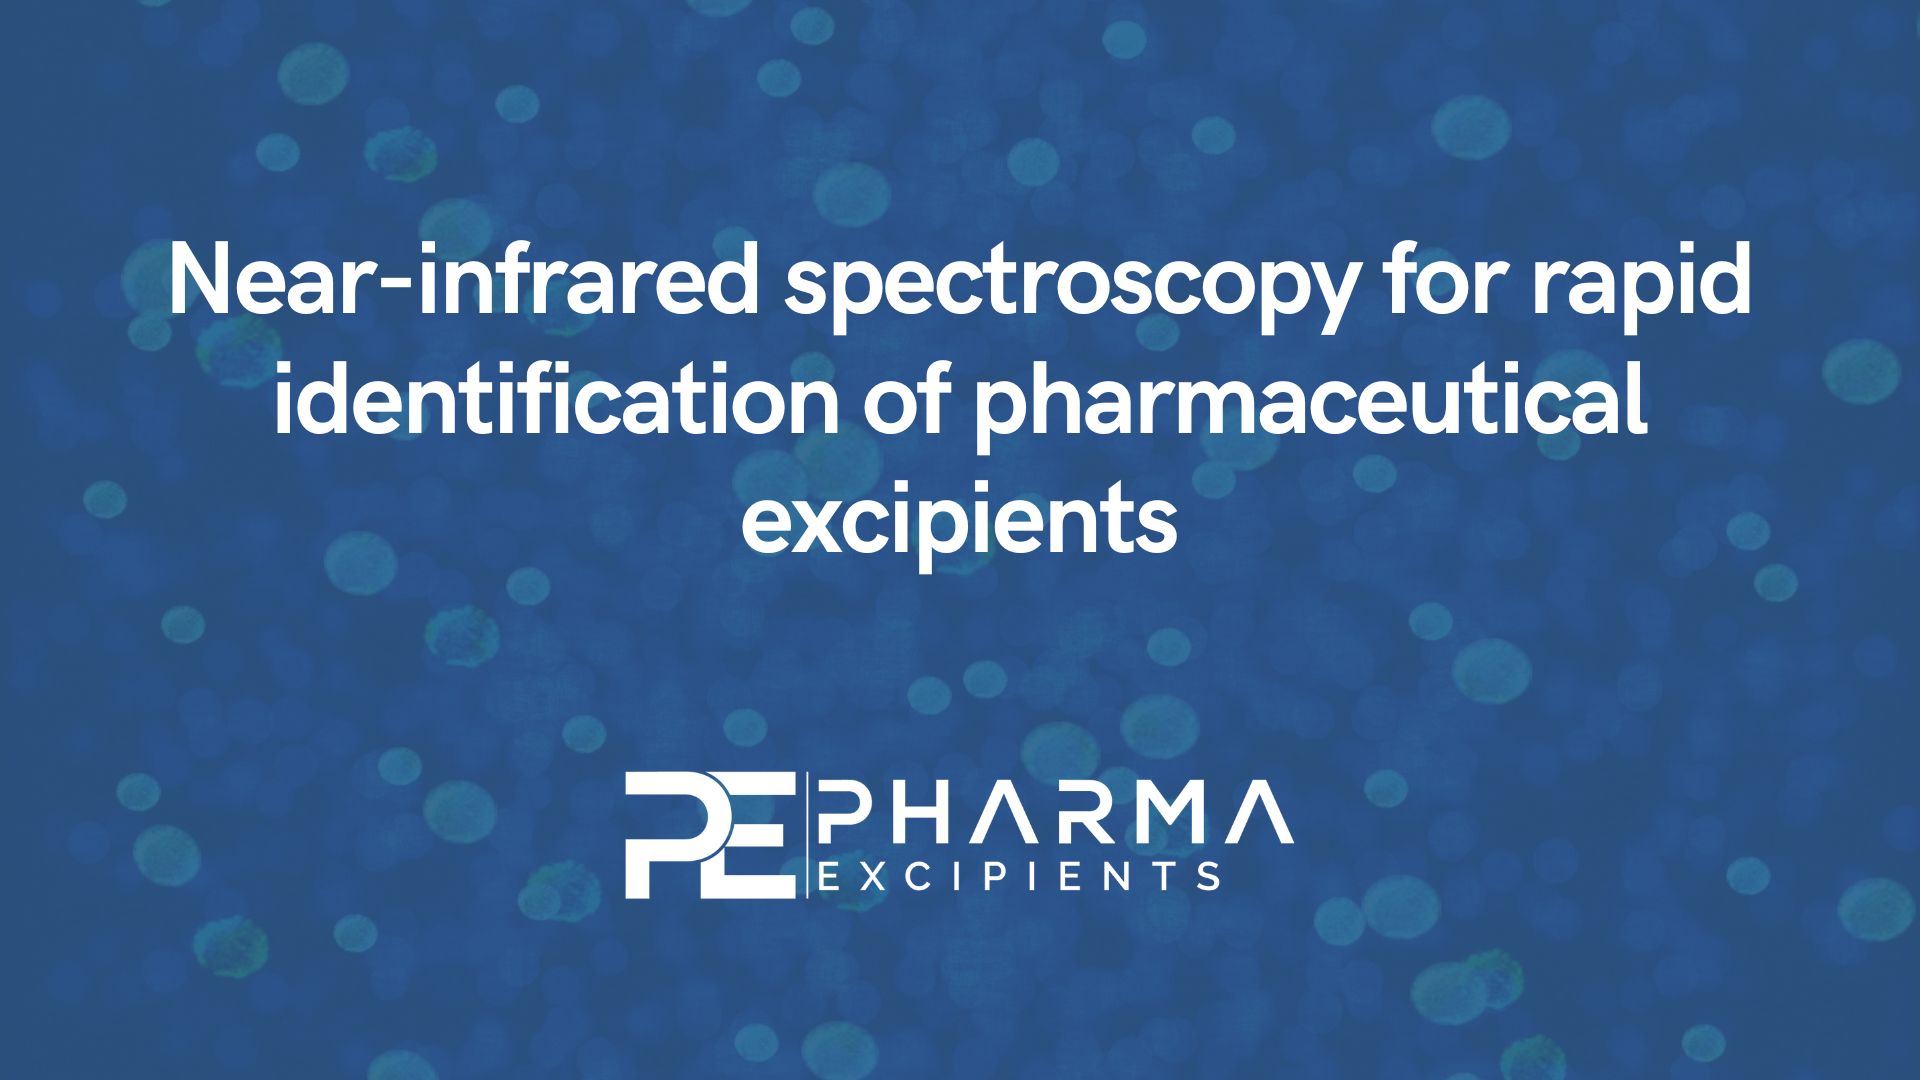 Espectroscopia de infravermelho próximo para identificação rápida de excipientes farmacêuticos